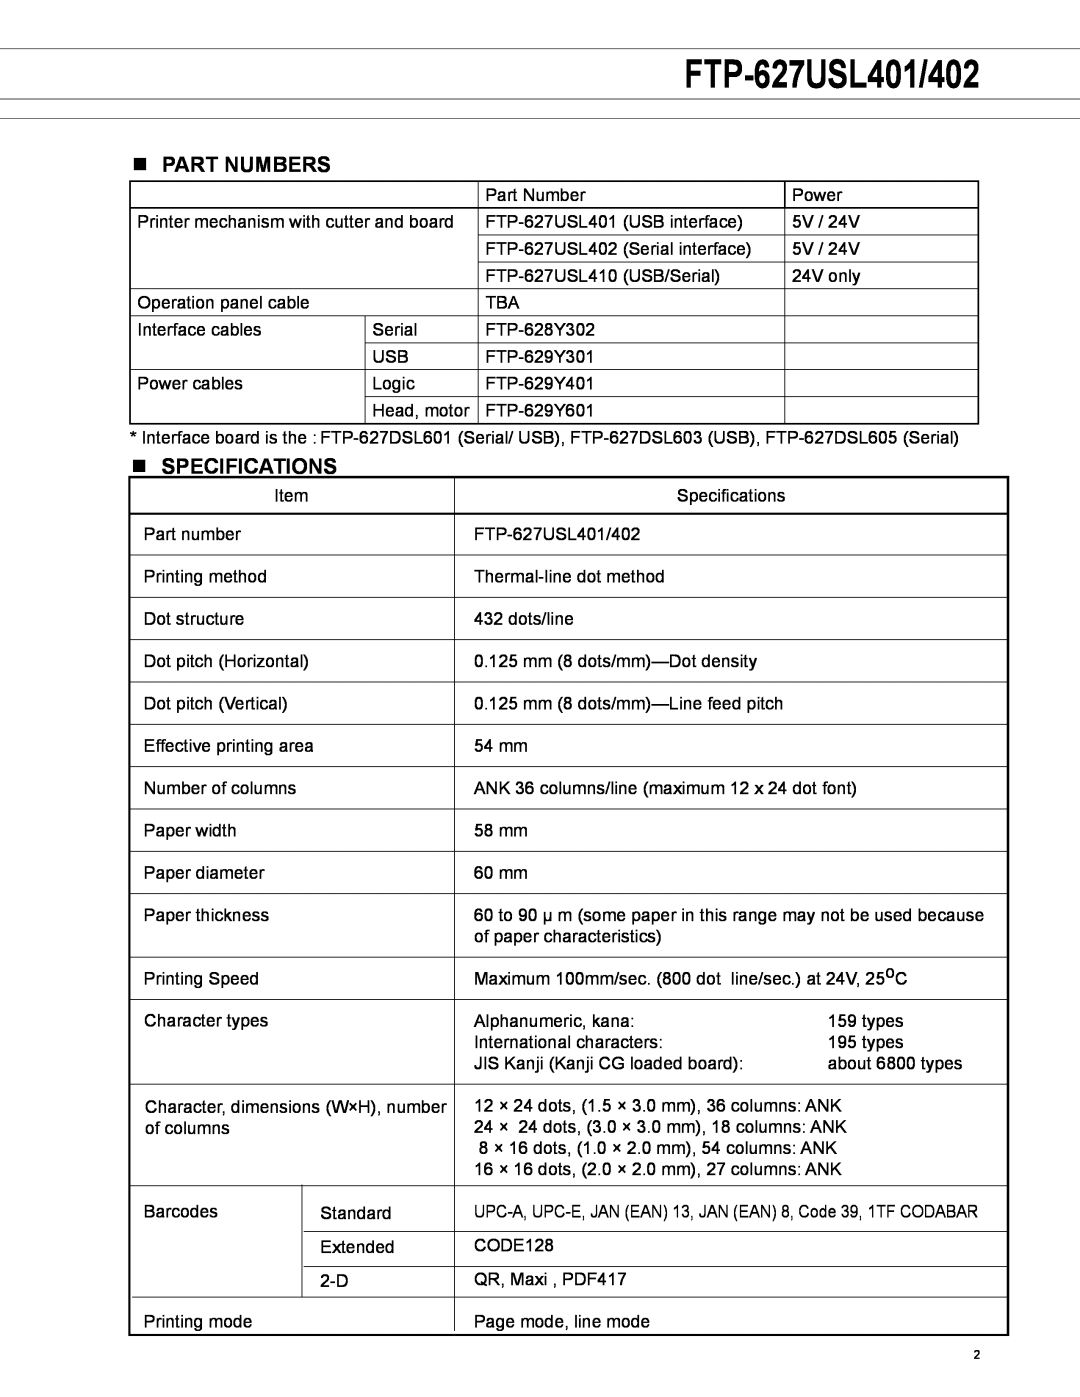 Fujitsu FTP-627USL402 manual FTP-627USL401/402, n Part numbers, n SPECIFICATIONS 